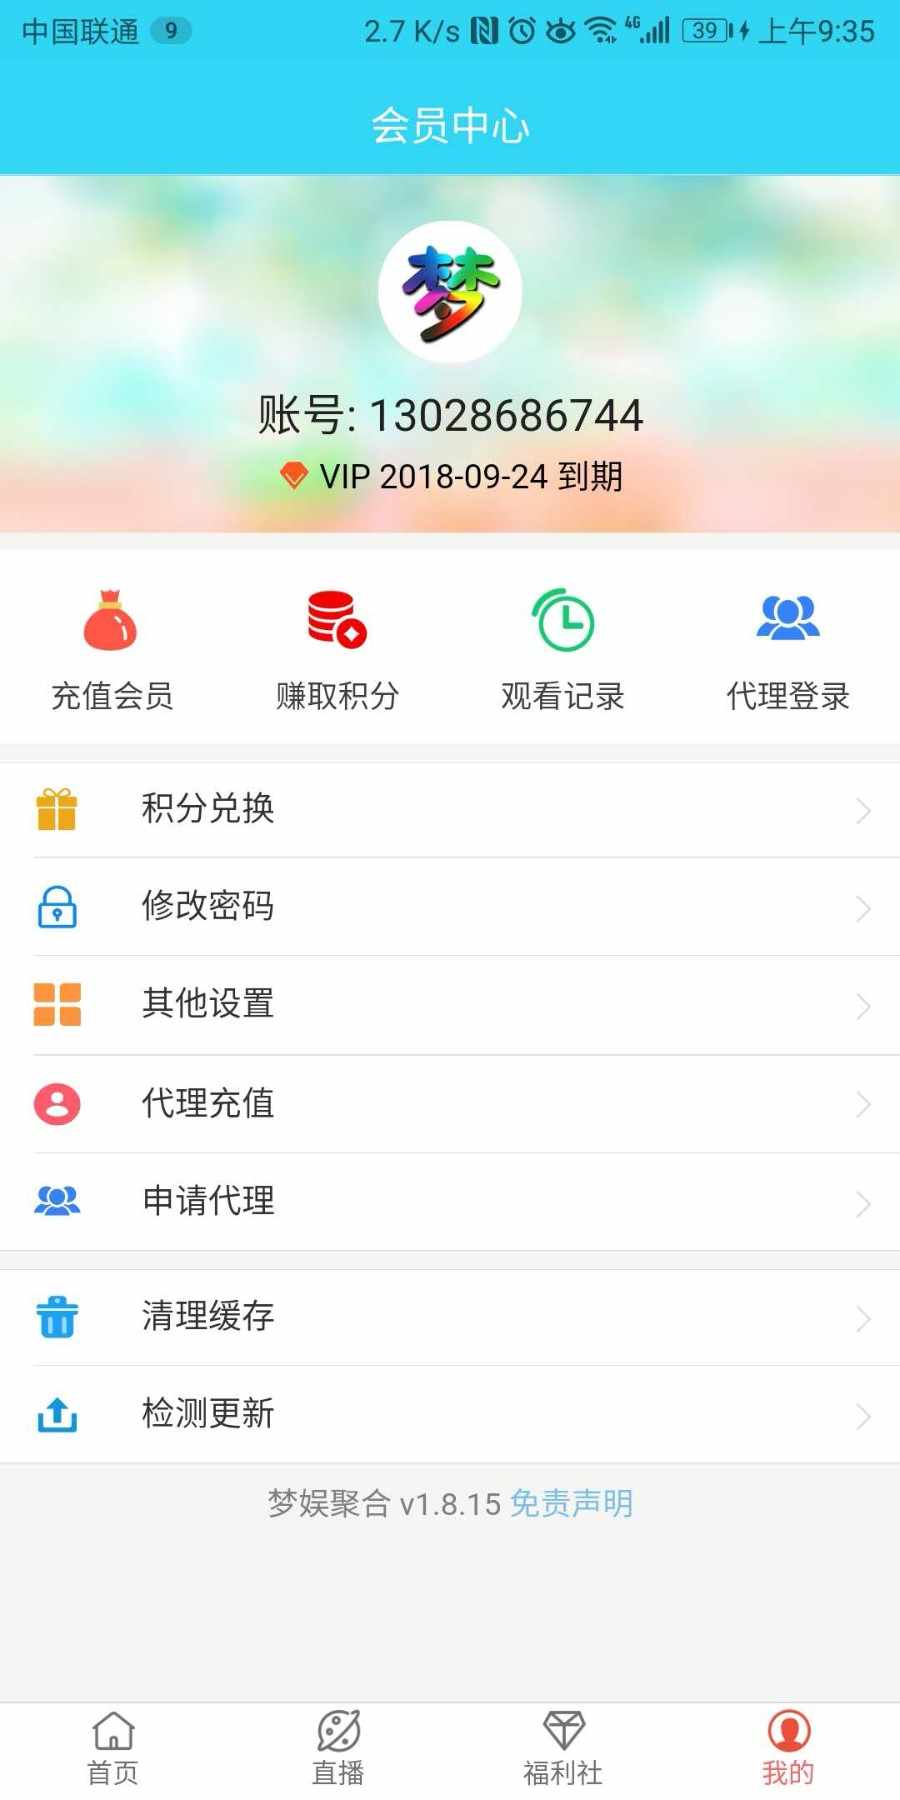 全网9月11最新~梦娱聚合~双端视频App~